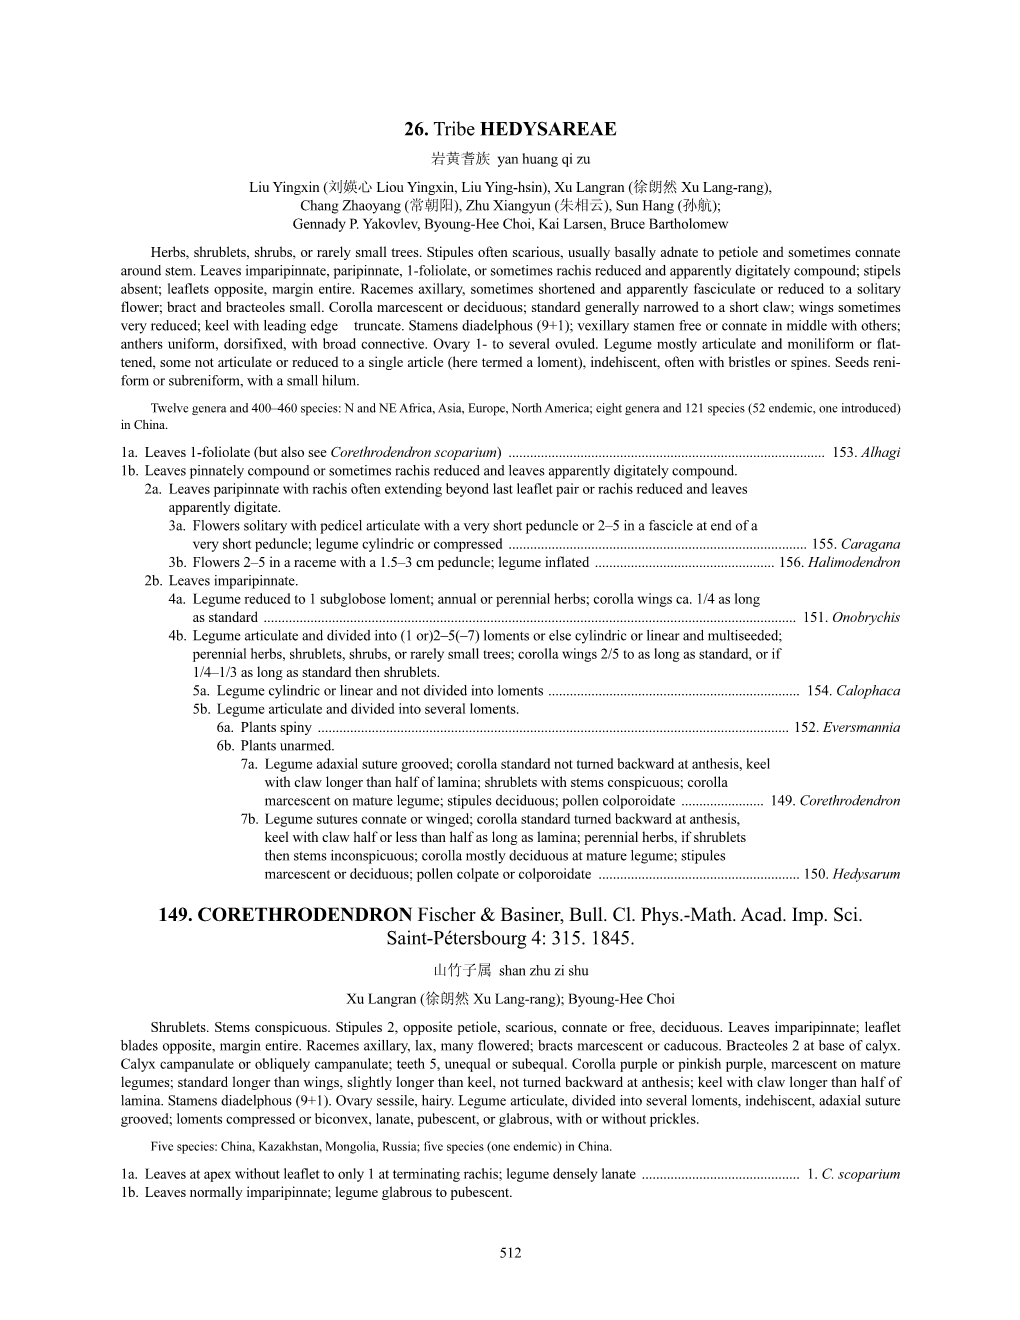 Hedysareae (PDF)